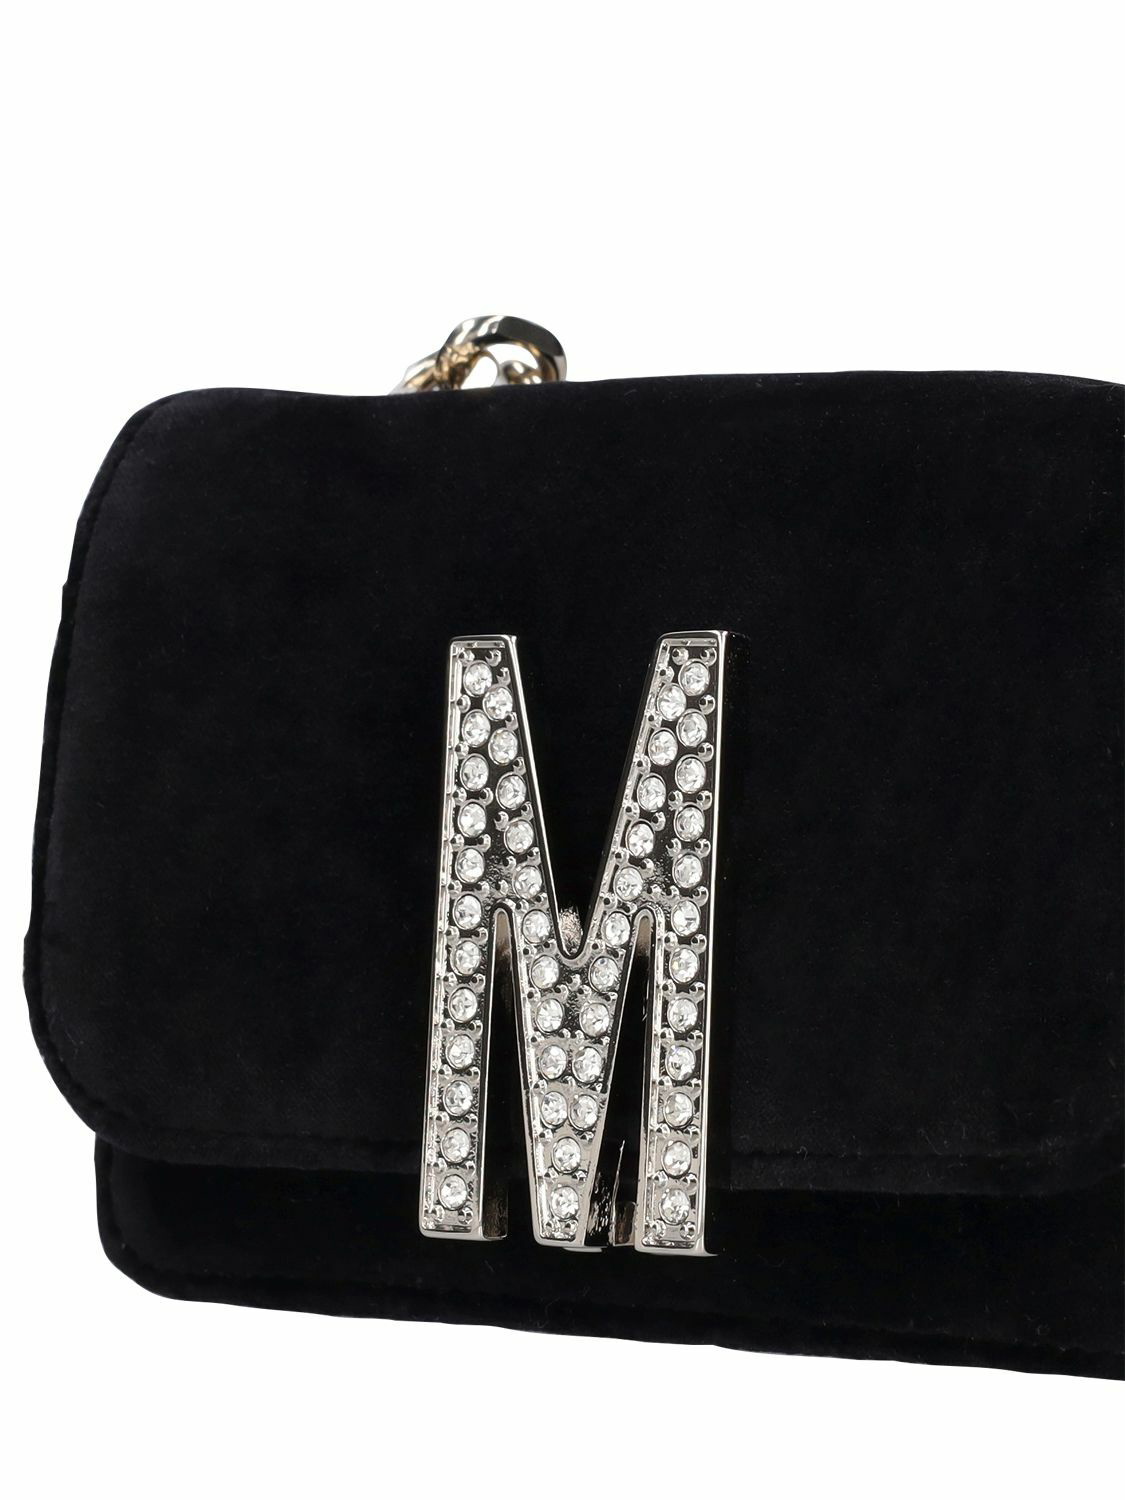 Love Moschino Crossbody Bags | Mercari